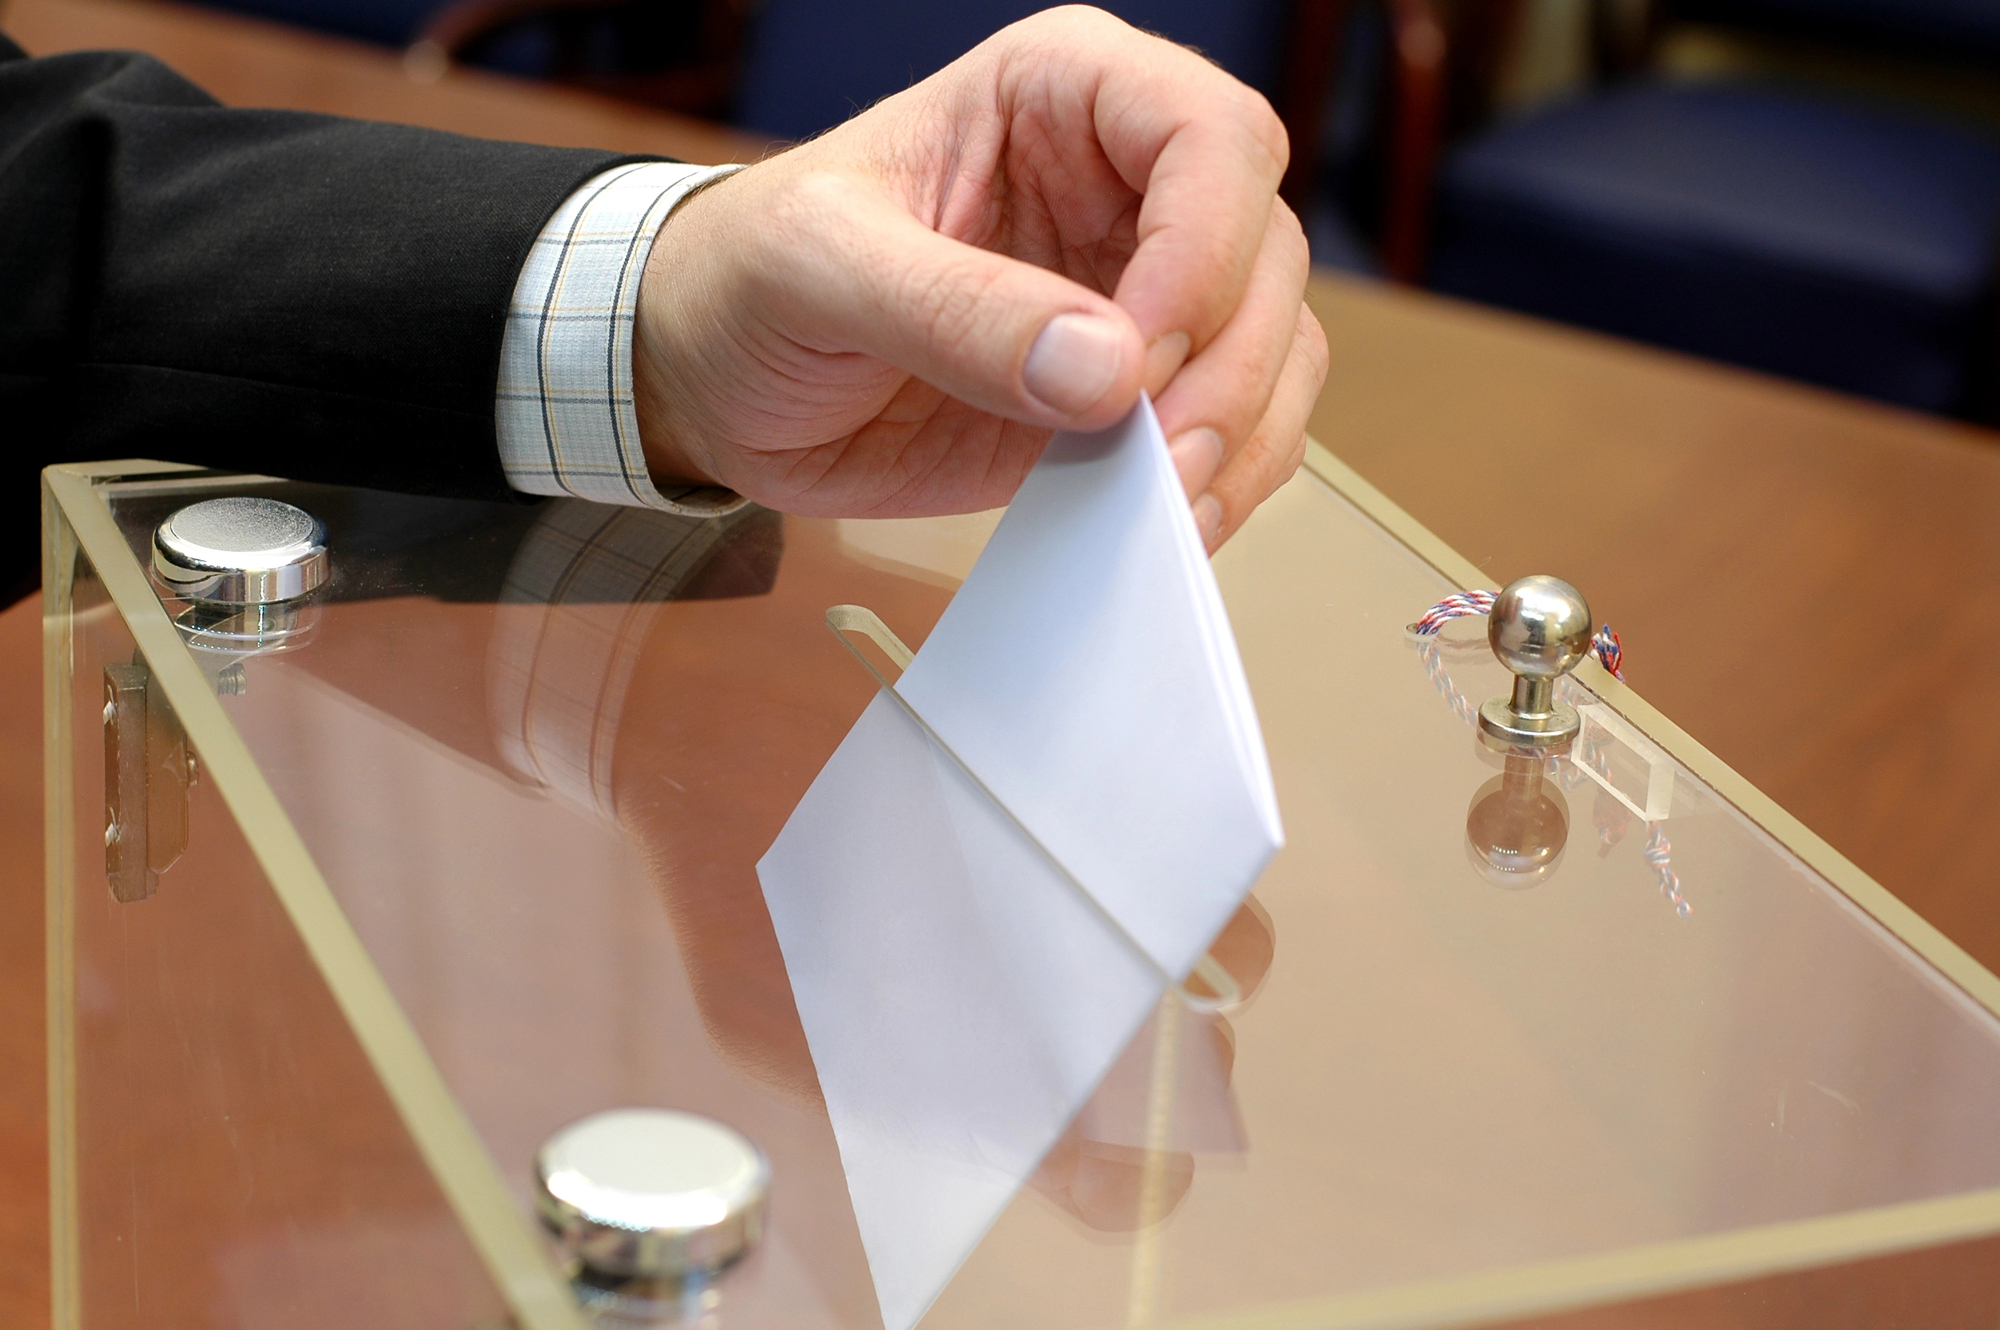 Post precedente: Niente voto in tre comuni della Calabria: mancano i candidati